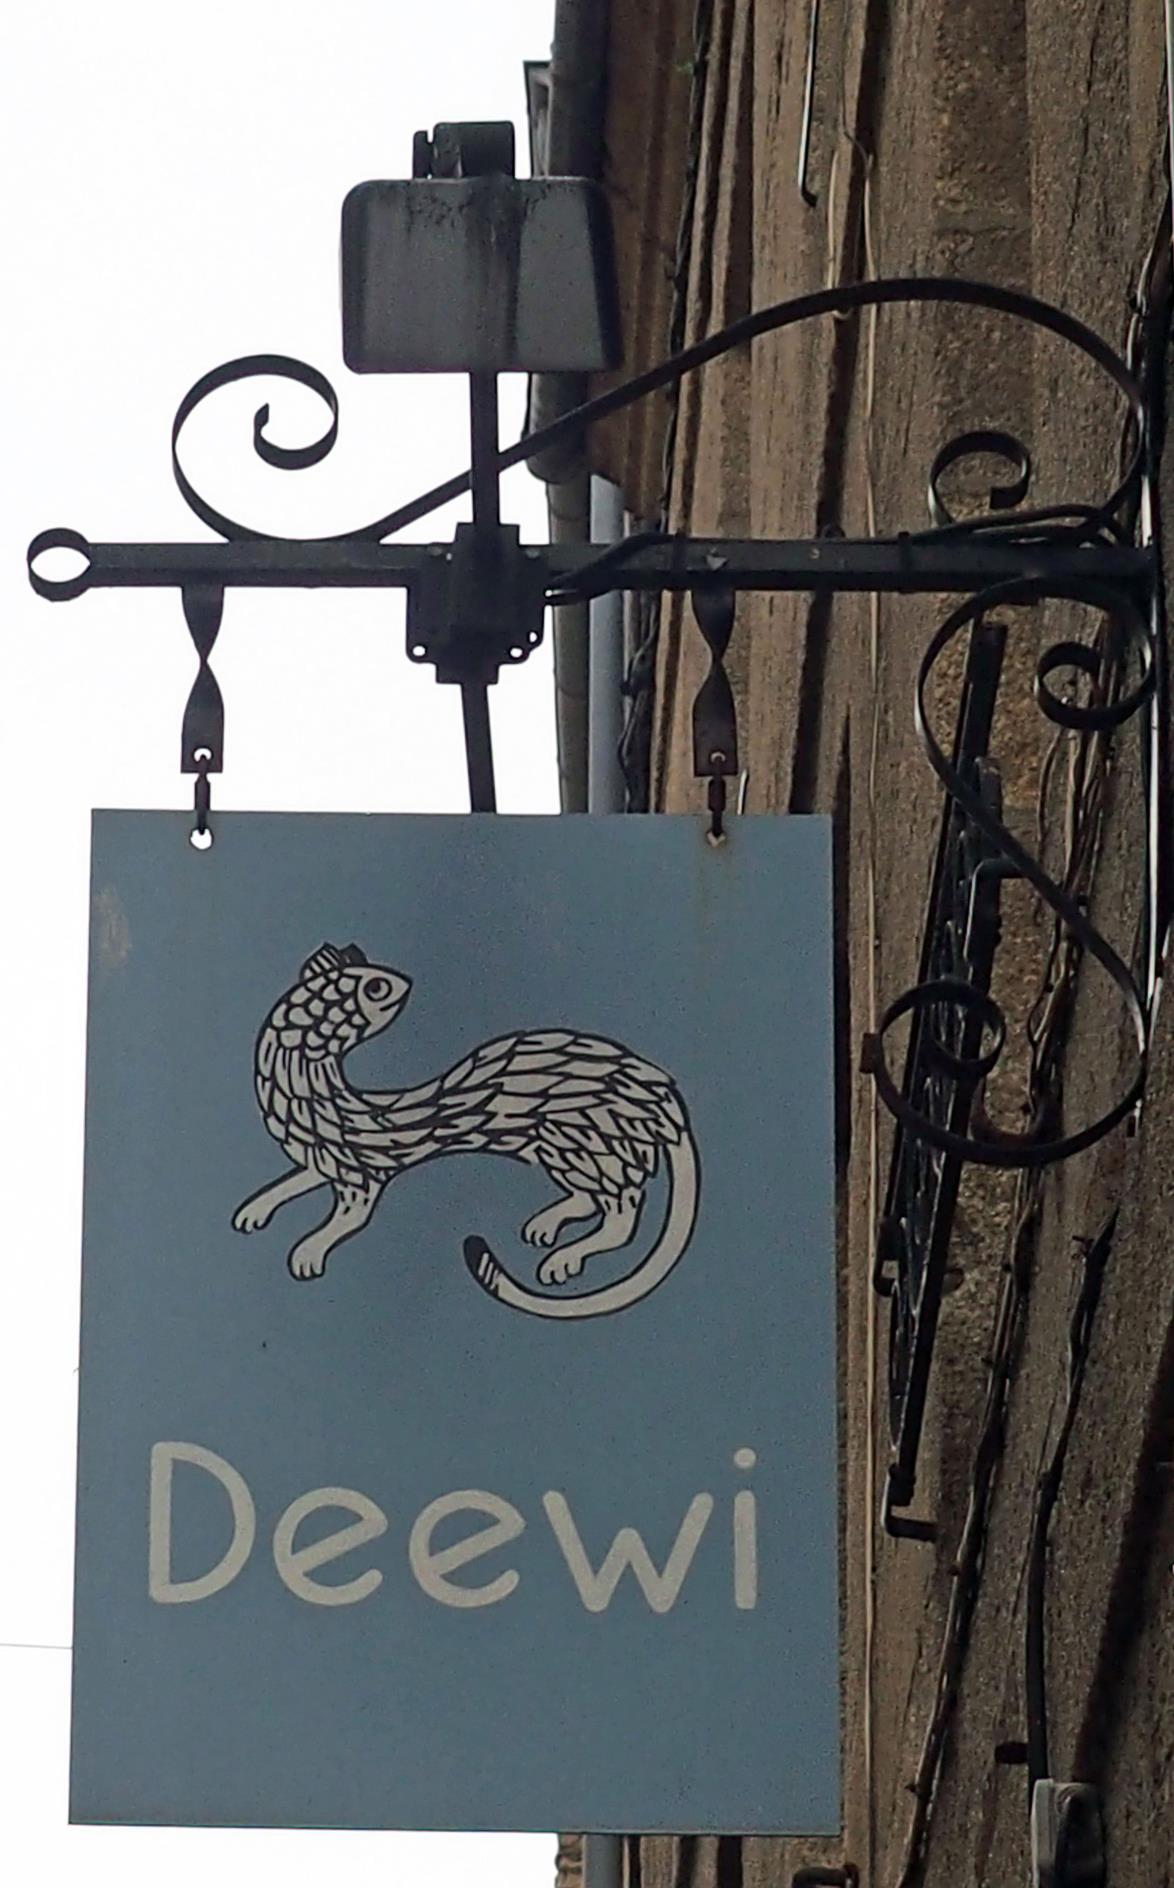 Deewi (artisanat breton) - Dinan